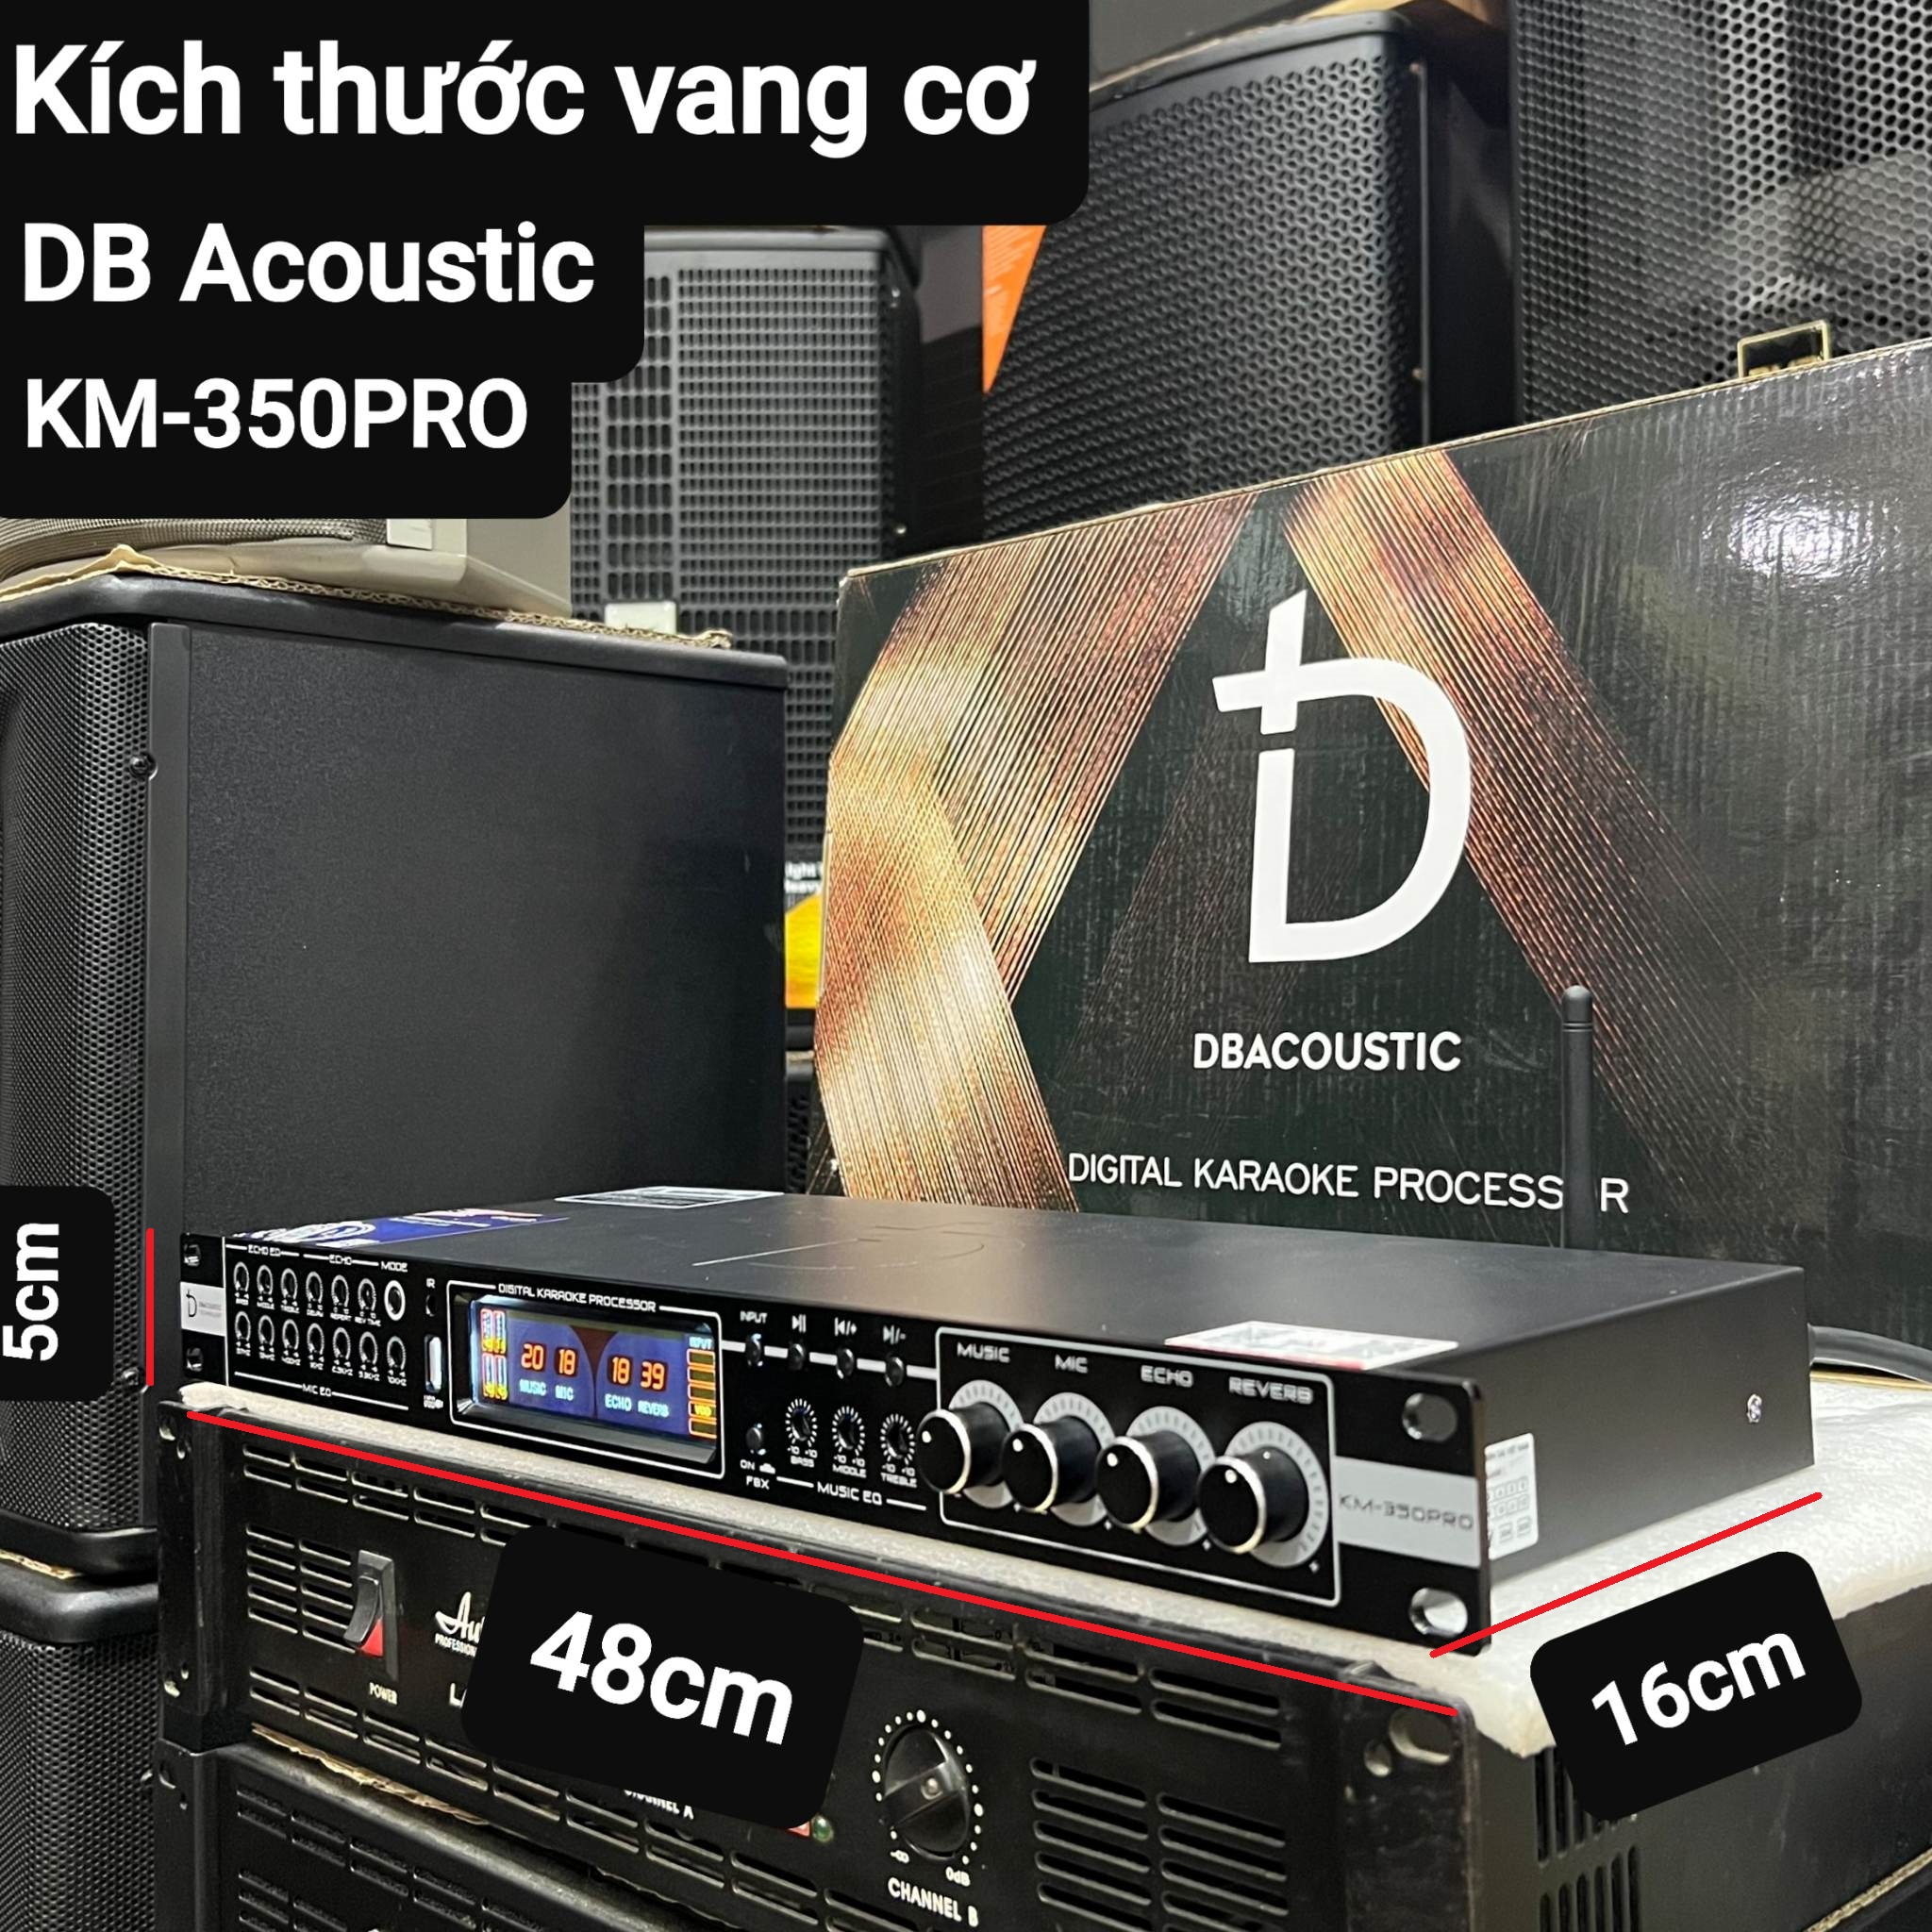 Vang cơ lai số DB Acoustic KM-350PRO: Tiếng hay, Chống hú tốt, Âm thanh sạch, sáng tiếng, Tặng kèm 2 dây Canon kết nối